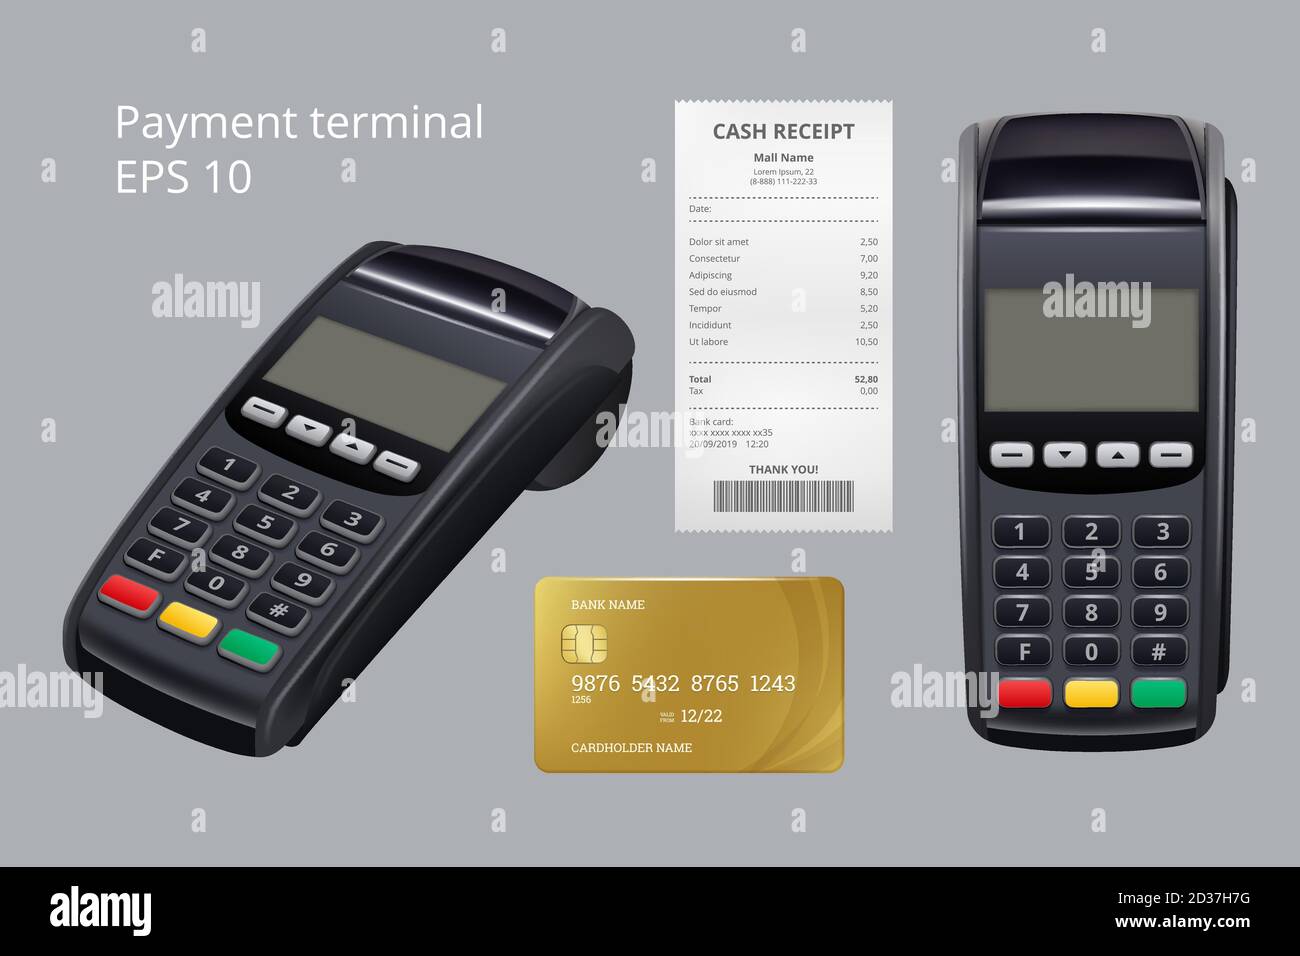 Zahlungsterminal. Kreditkarte Termination Maschine nfc mobile Zahlungseingang für Waren Vektor realistische Illustrationen Stock Vektor